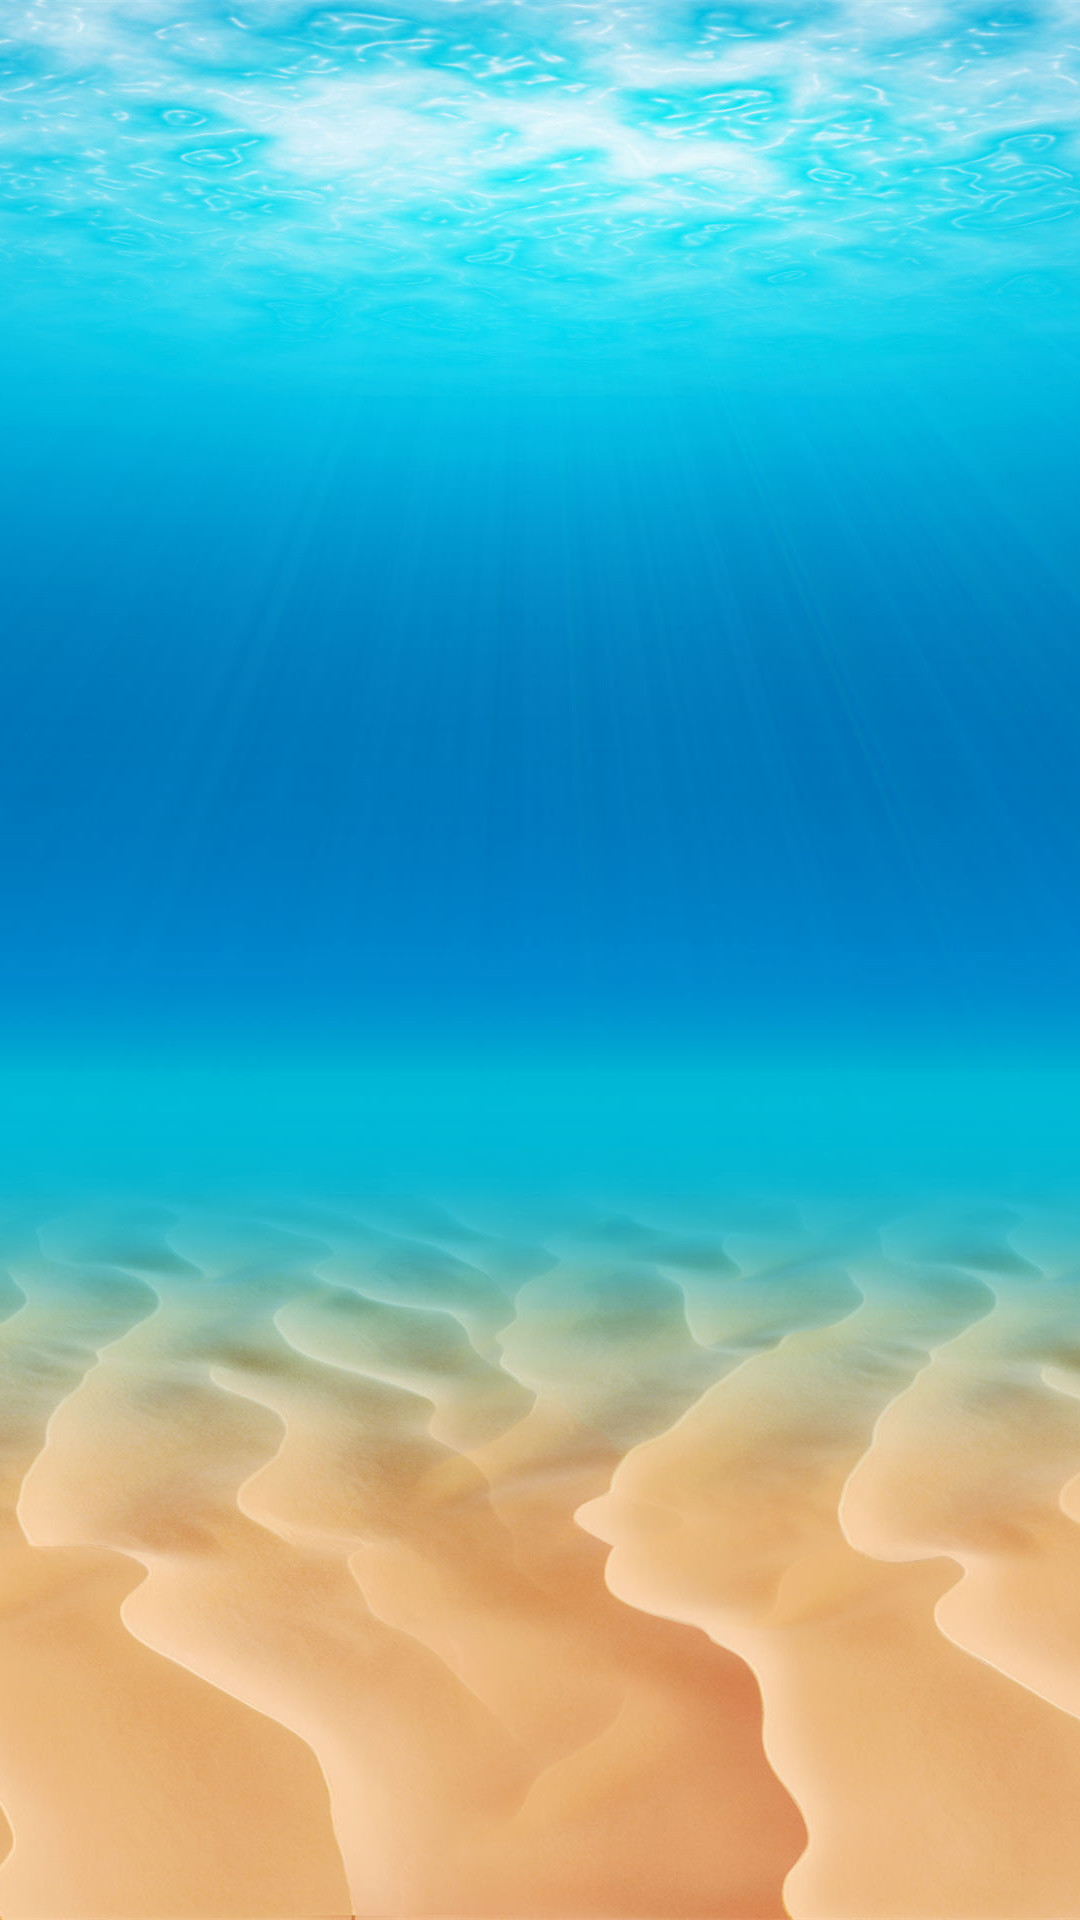 1080x1920 Download the Android Ocean Floor wallpaper